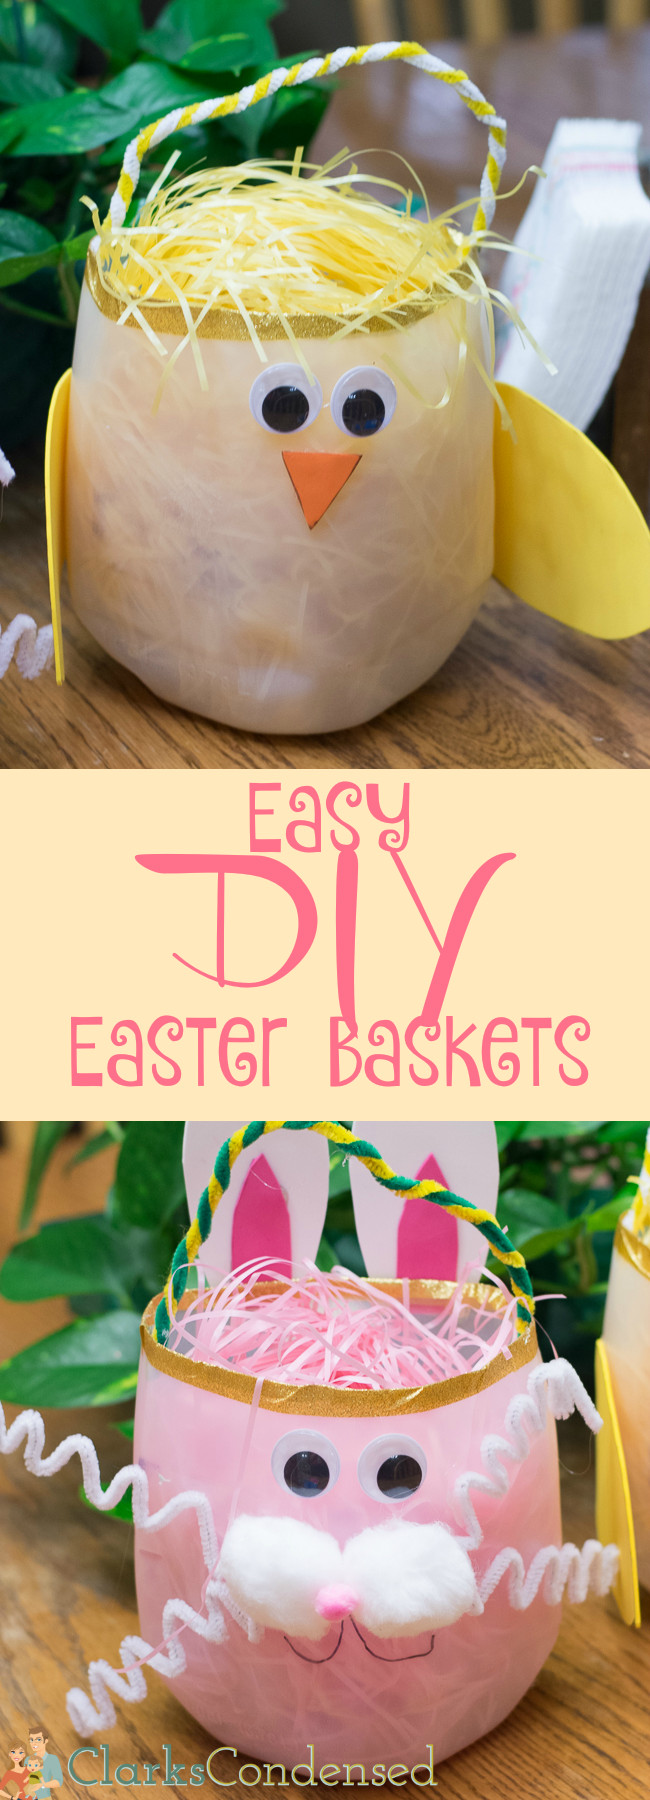 DIY Easter Basket For Toddler
 DIY Milk Jug Easter Basket An Easy Upcycled Craft